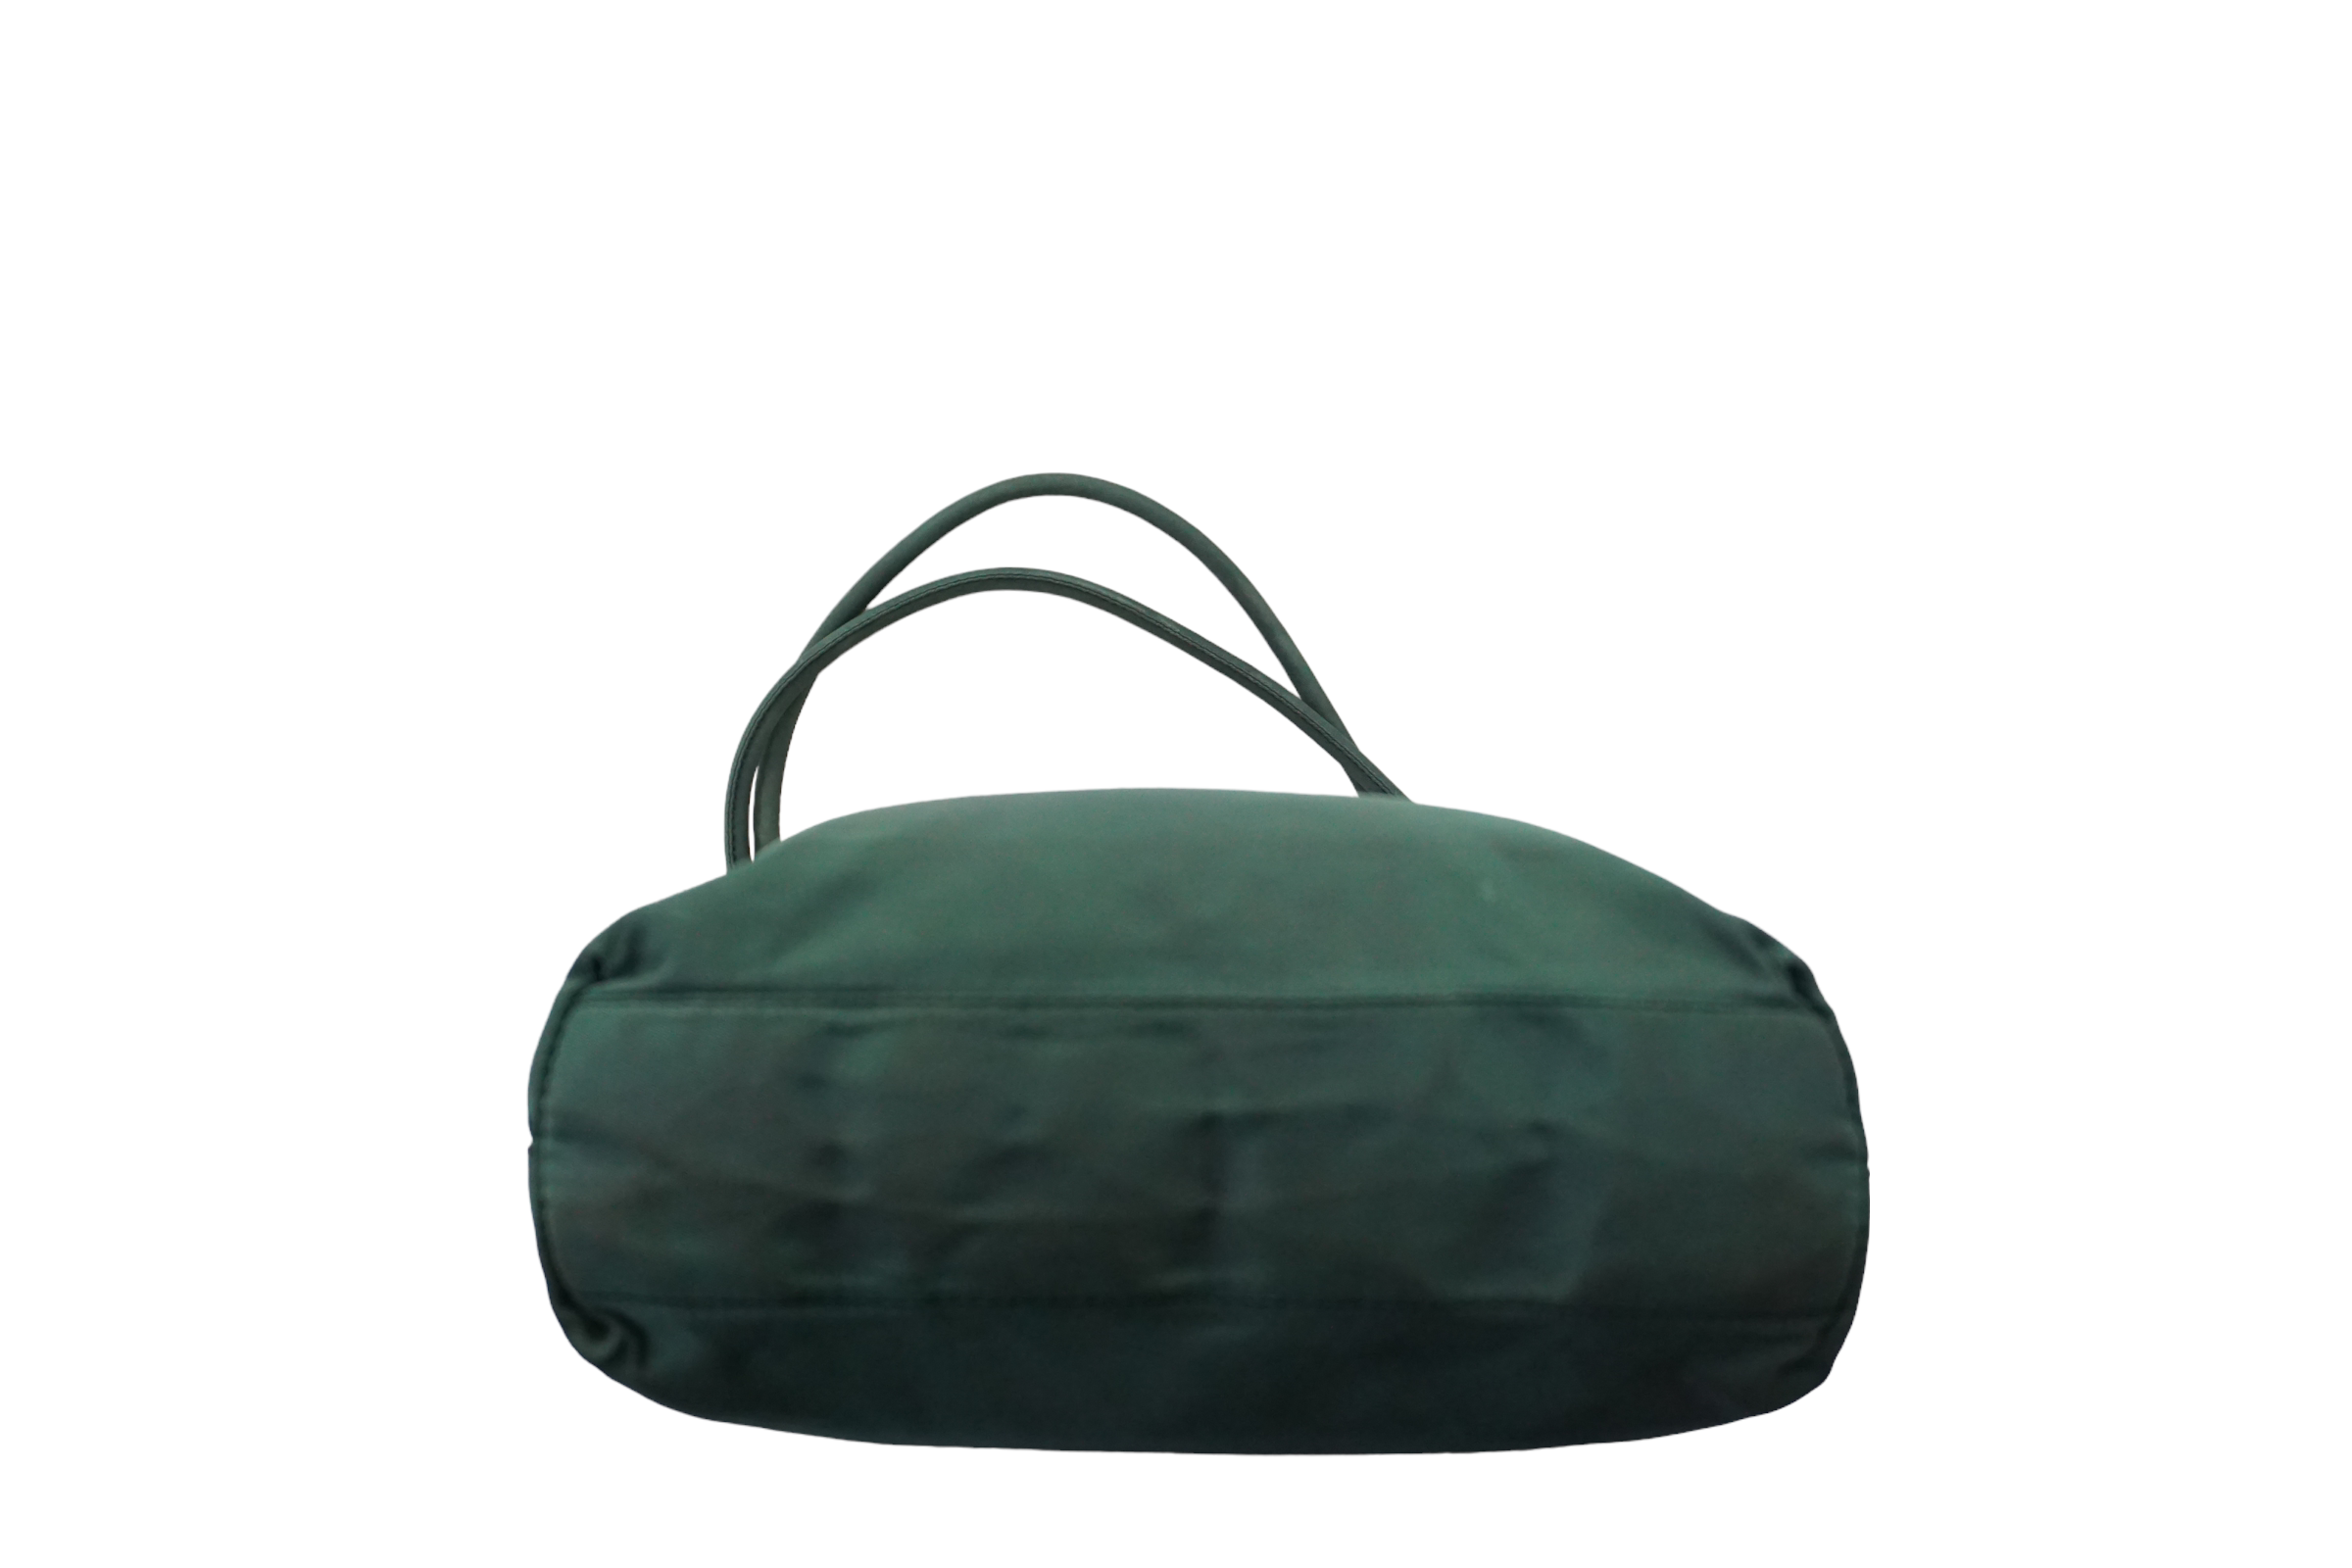 Prada Green Shoulder Bag